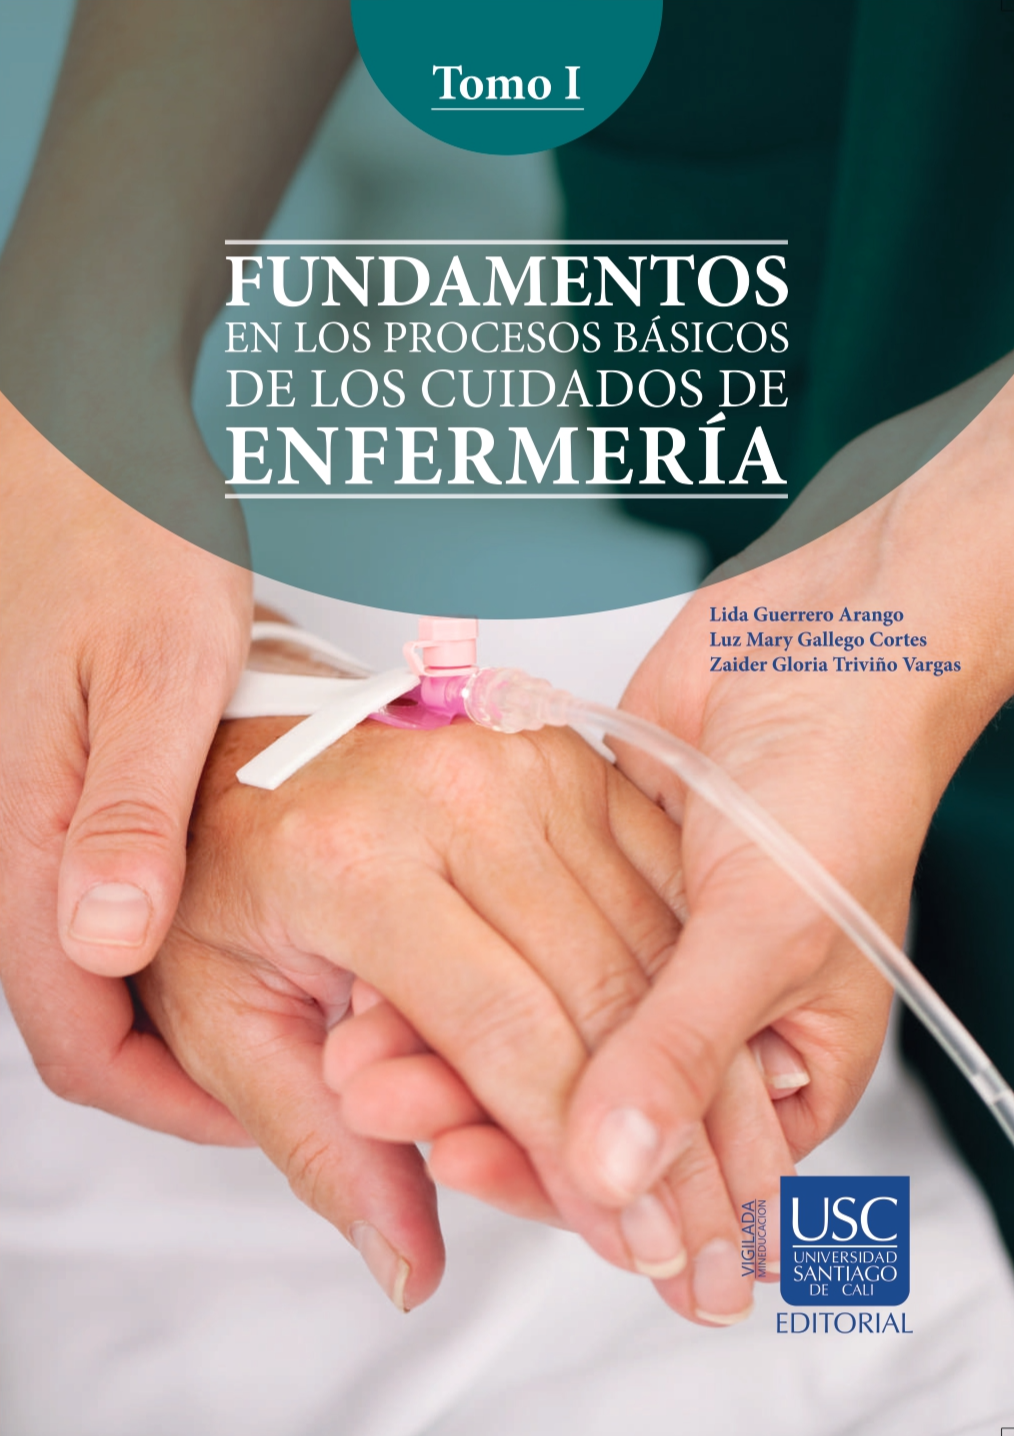 Imagen de portada del libro Fundamentos en los procesos básicos de los cuidados de enfermería. Tomo I